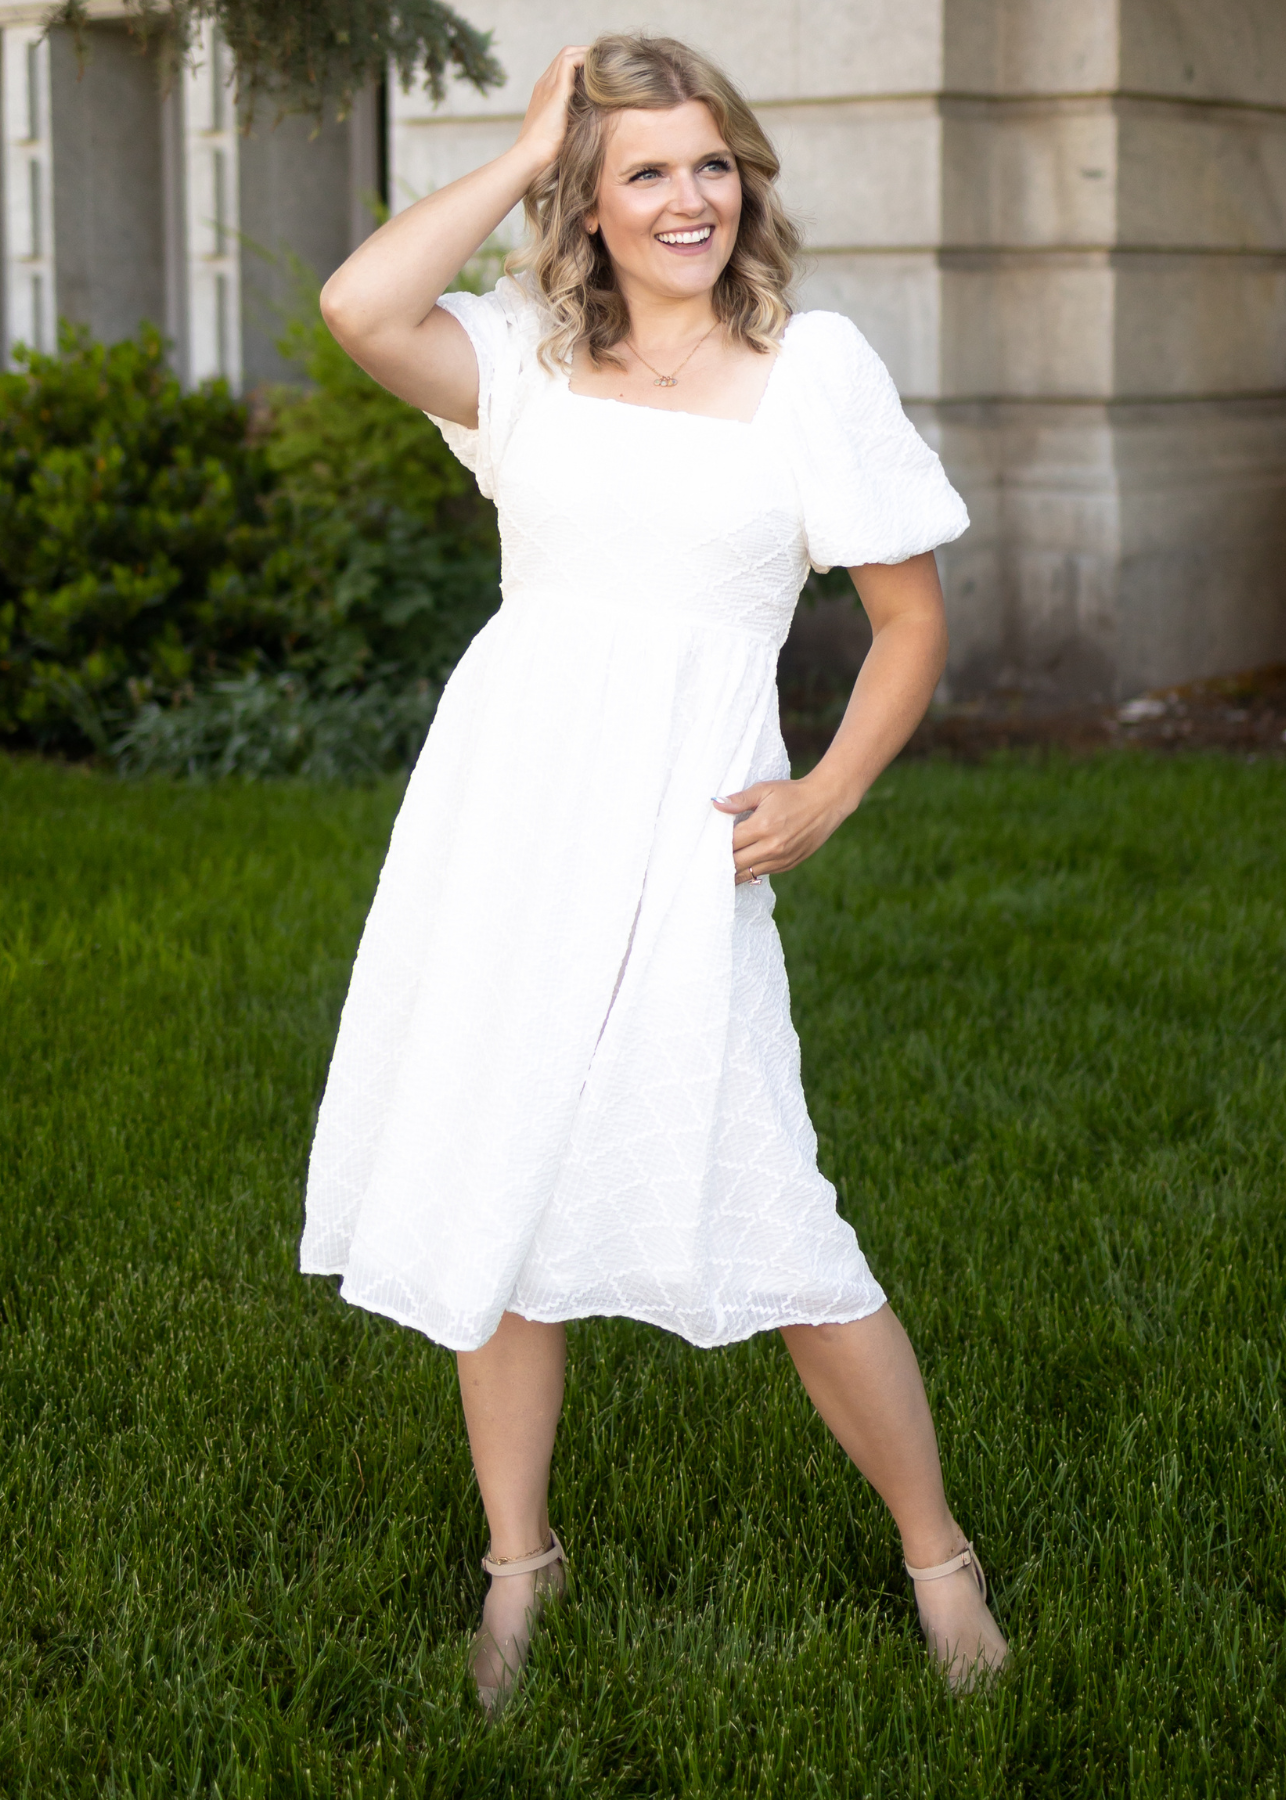 Short sleeve white dress